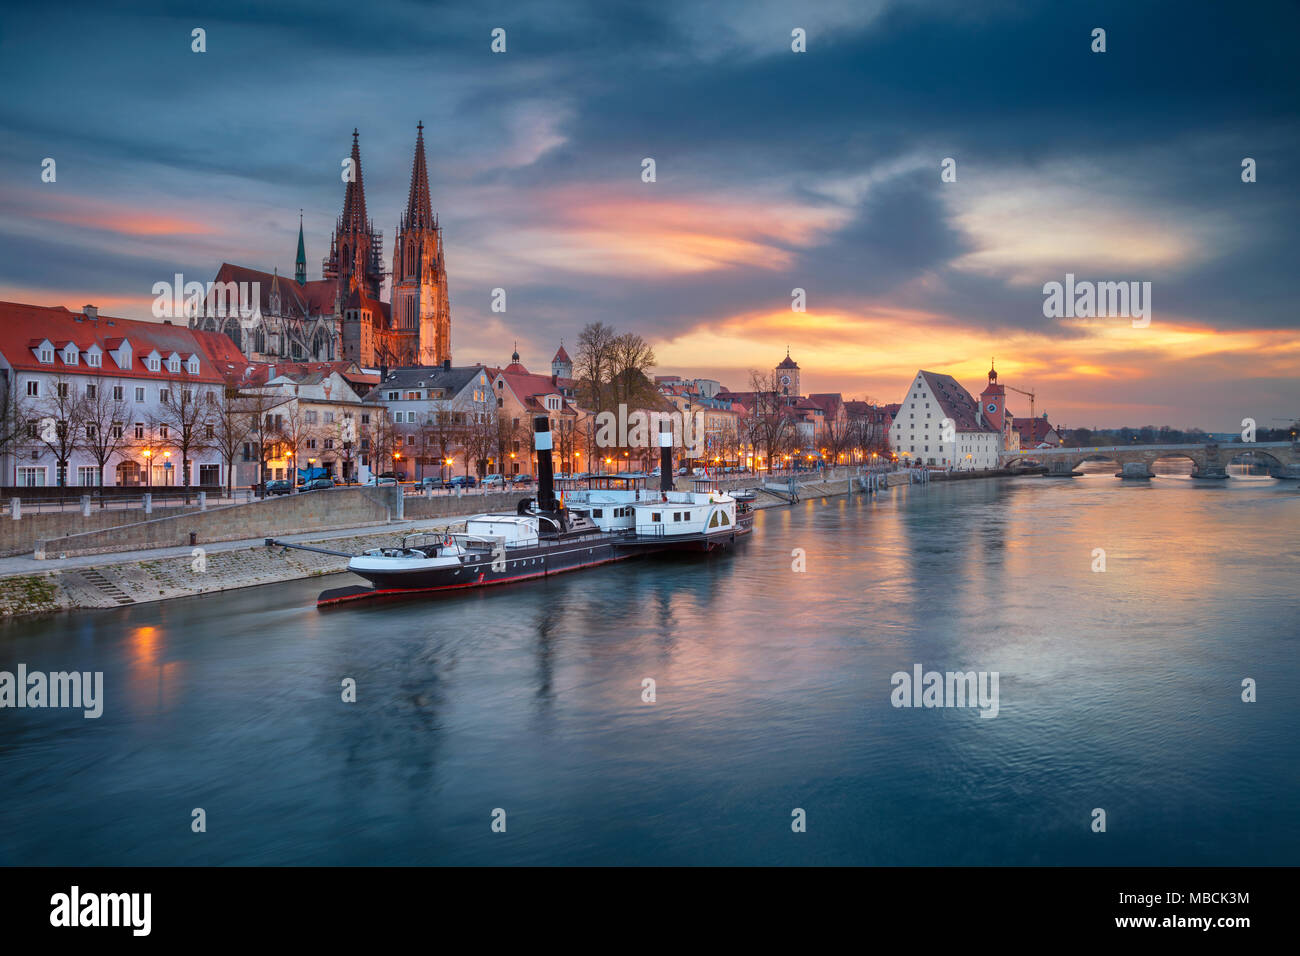 Regensburg. Cityscape image de Regensburg, Allemagne au printemps le coucher du soleil. Banque D'Images